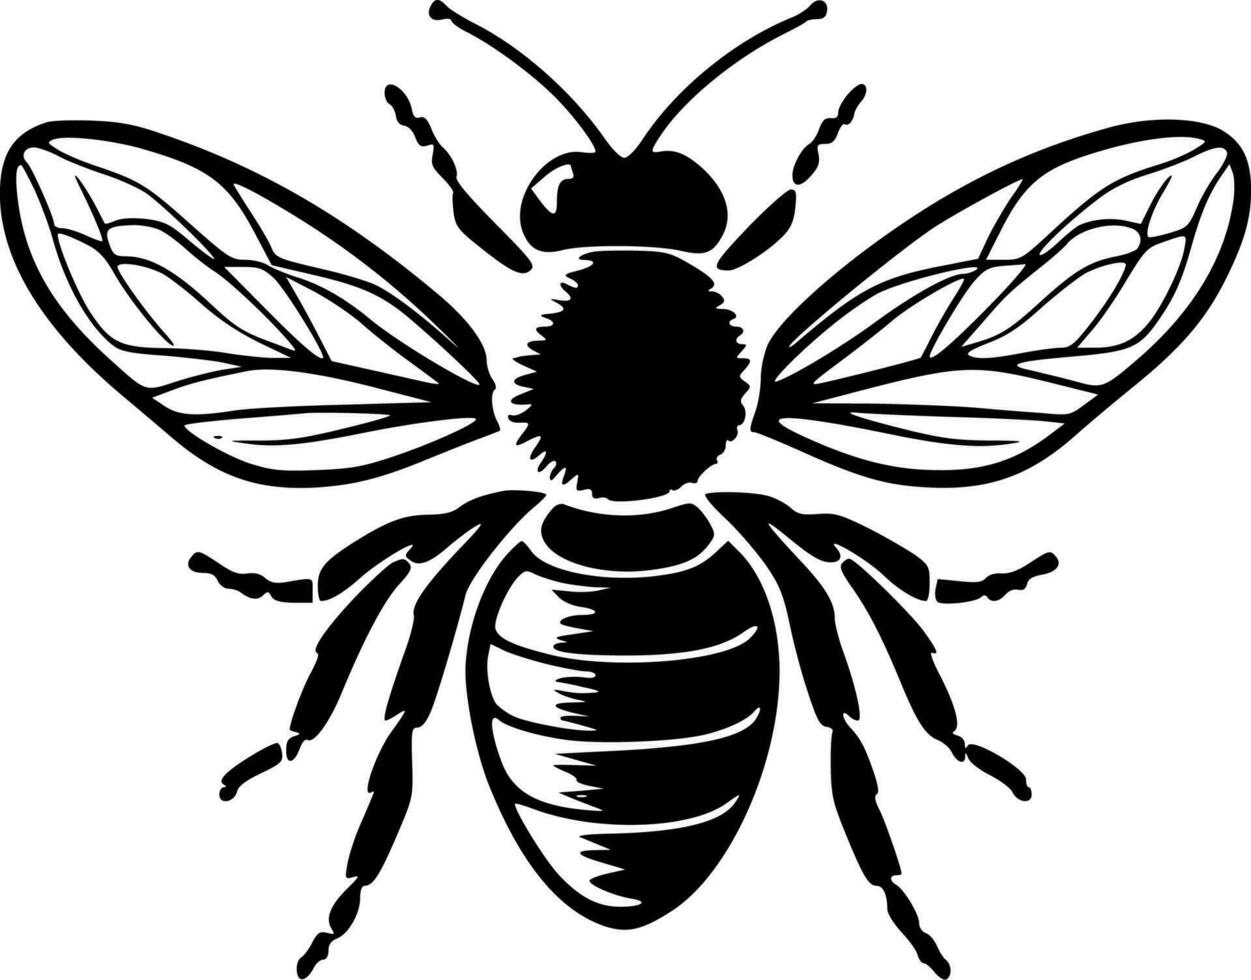 Honeybee, Minimalist and Simple Silhouette - Vector illustration